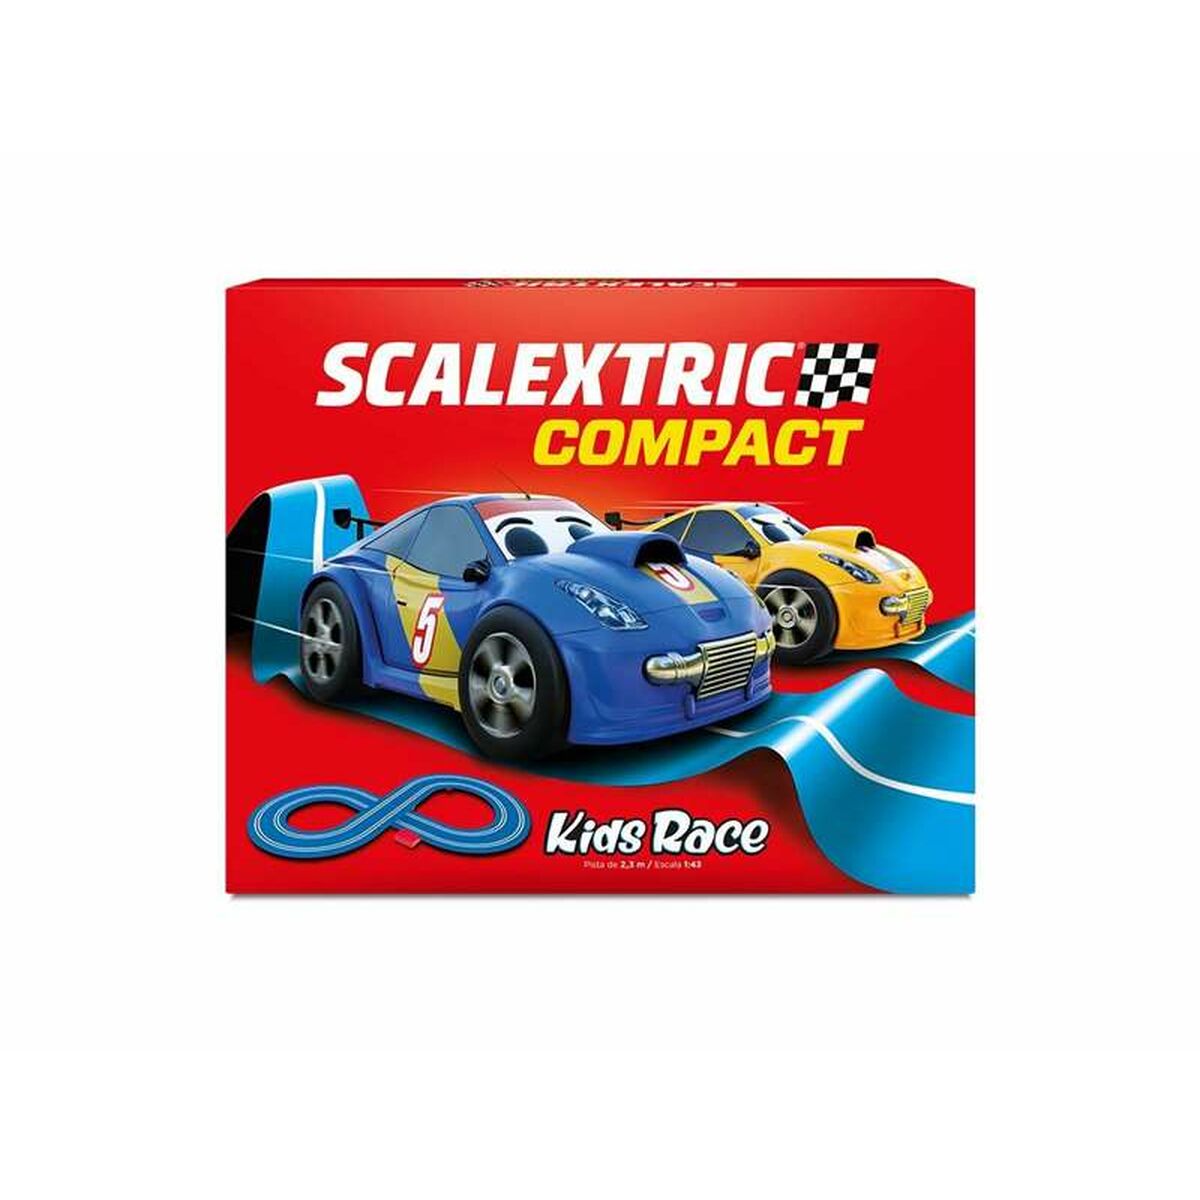 Pista da Corsa Scalextric Kids Race 2,3 m 94 x 45,6 cm